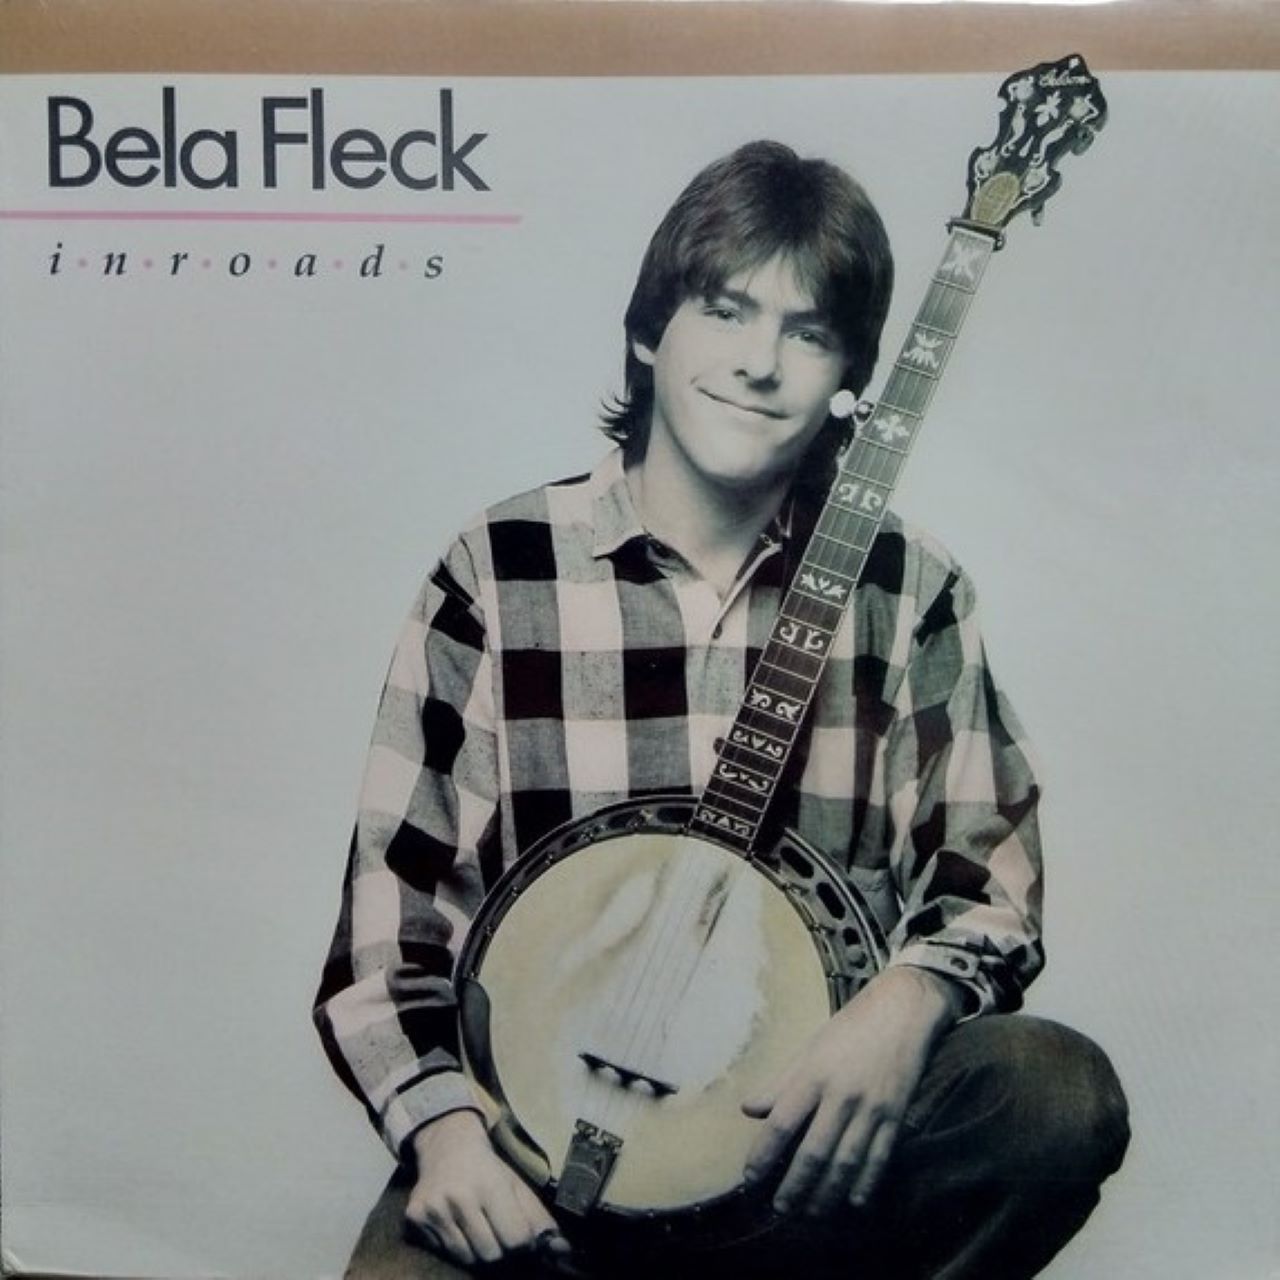 Bela Fleck - In Roads covewr album